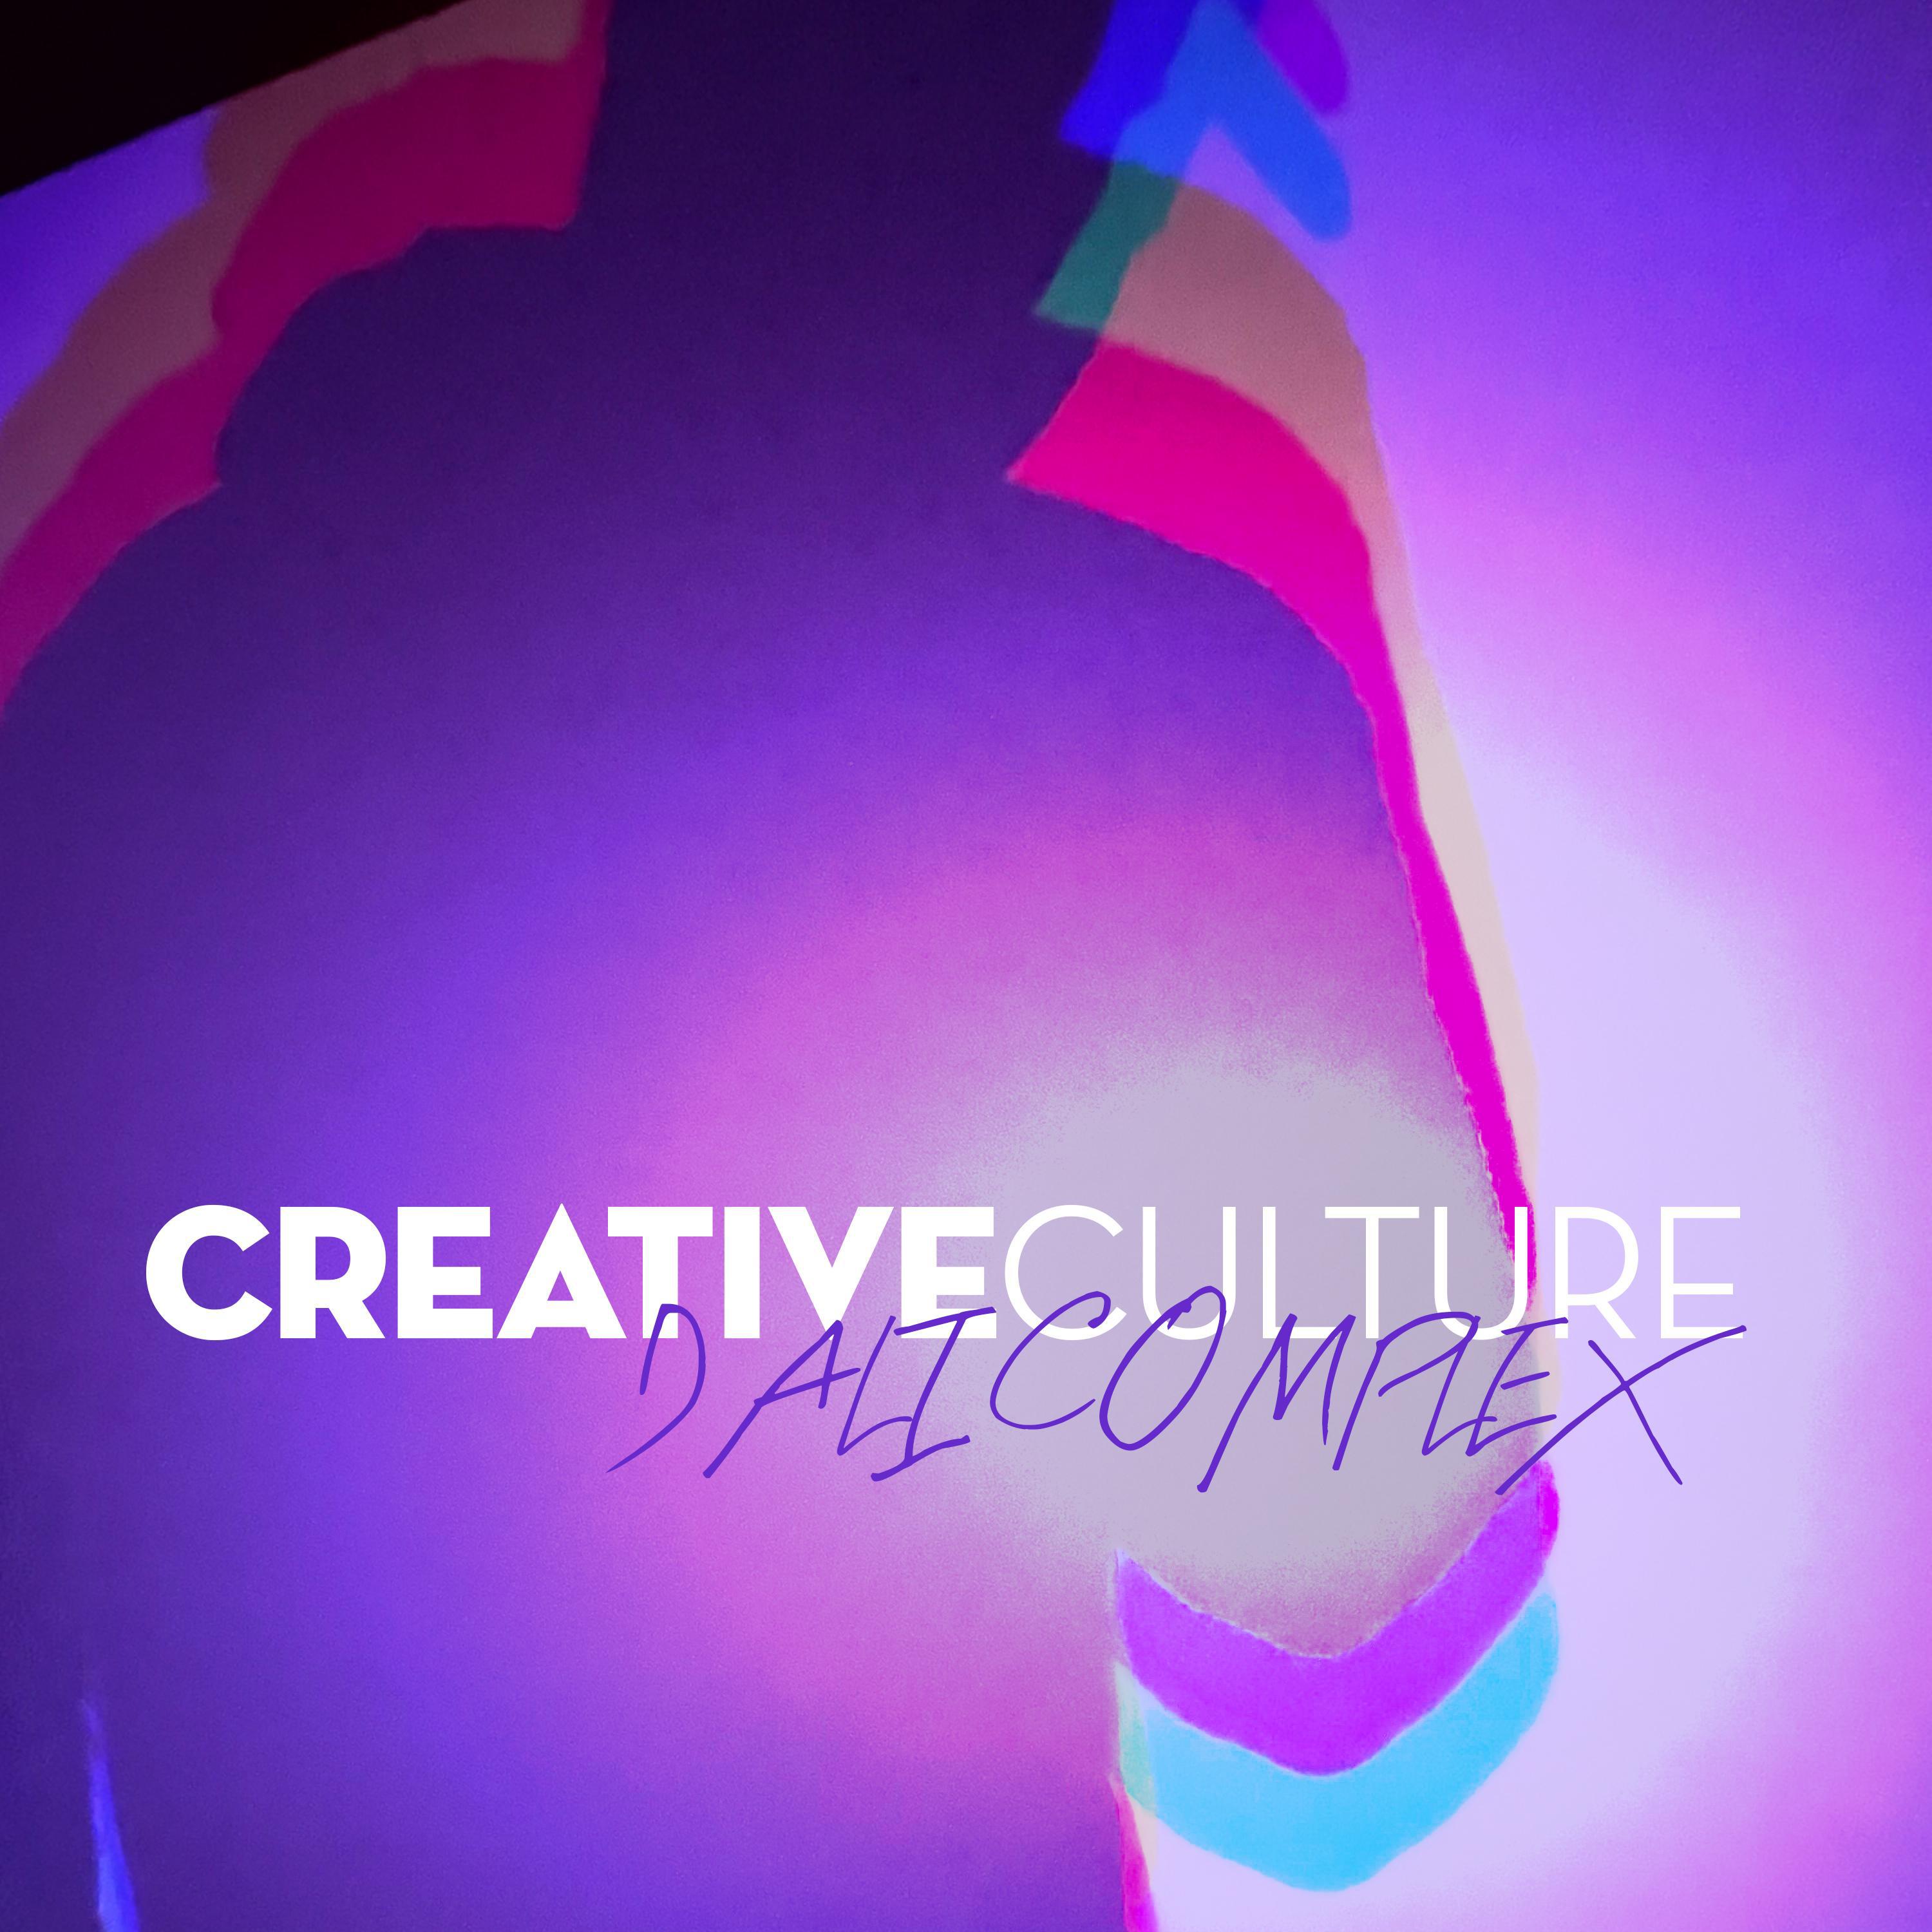 Creative Culture - Dali Complex